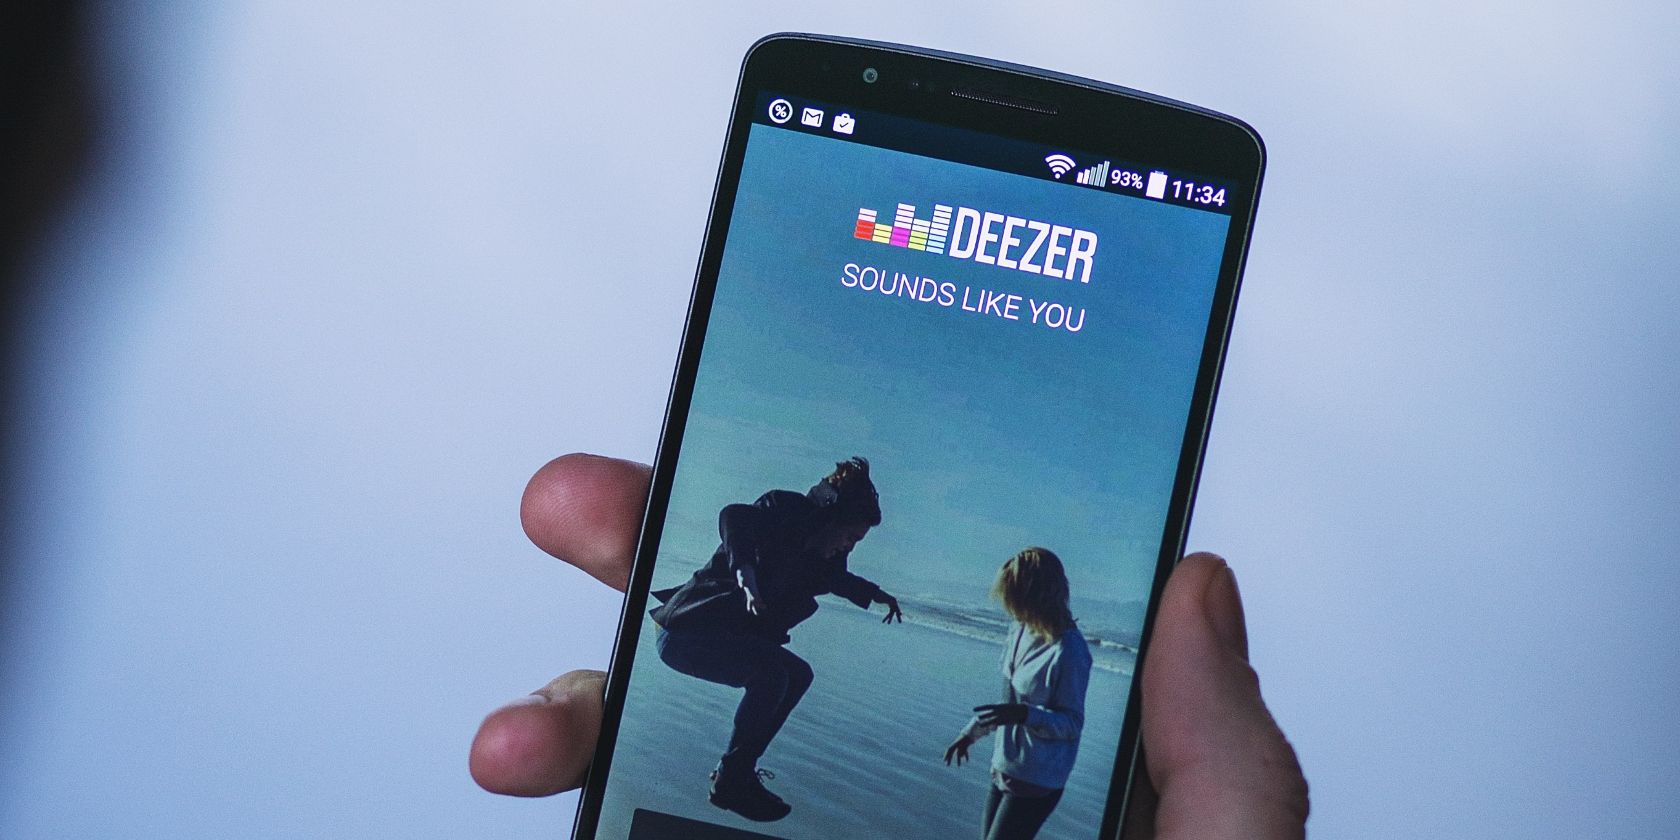 deezer app on smartphone in man's hand